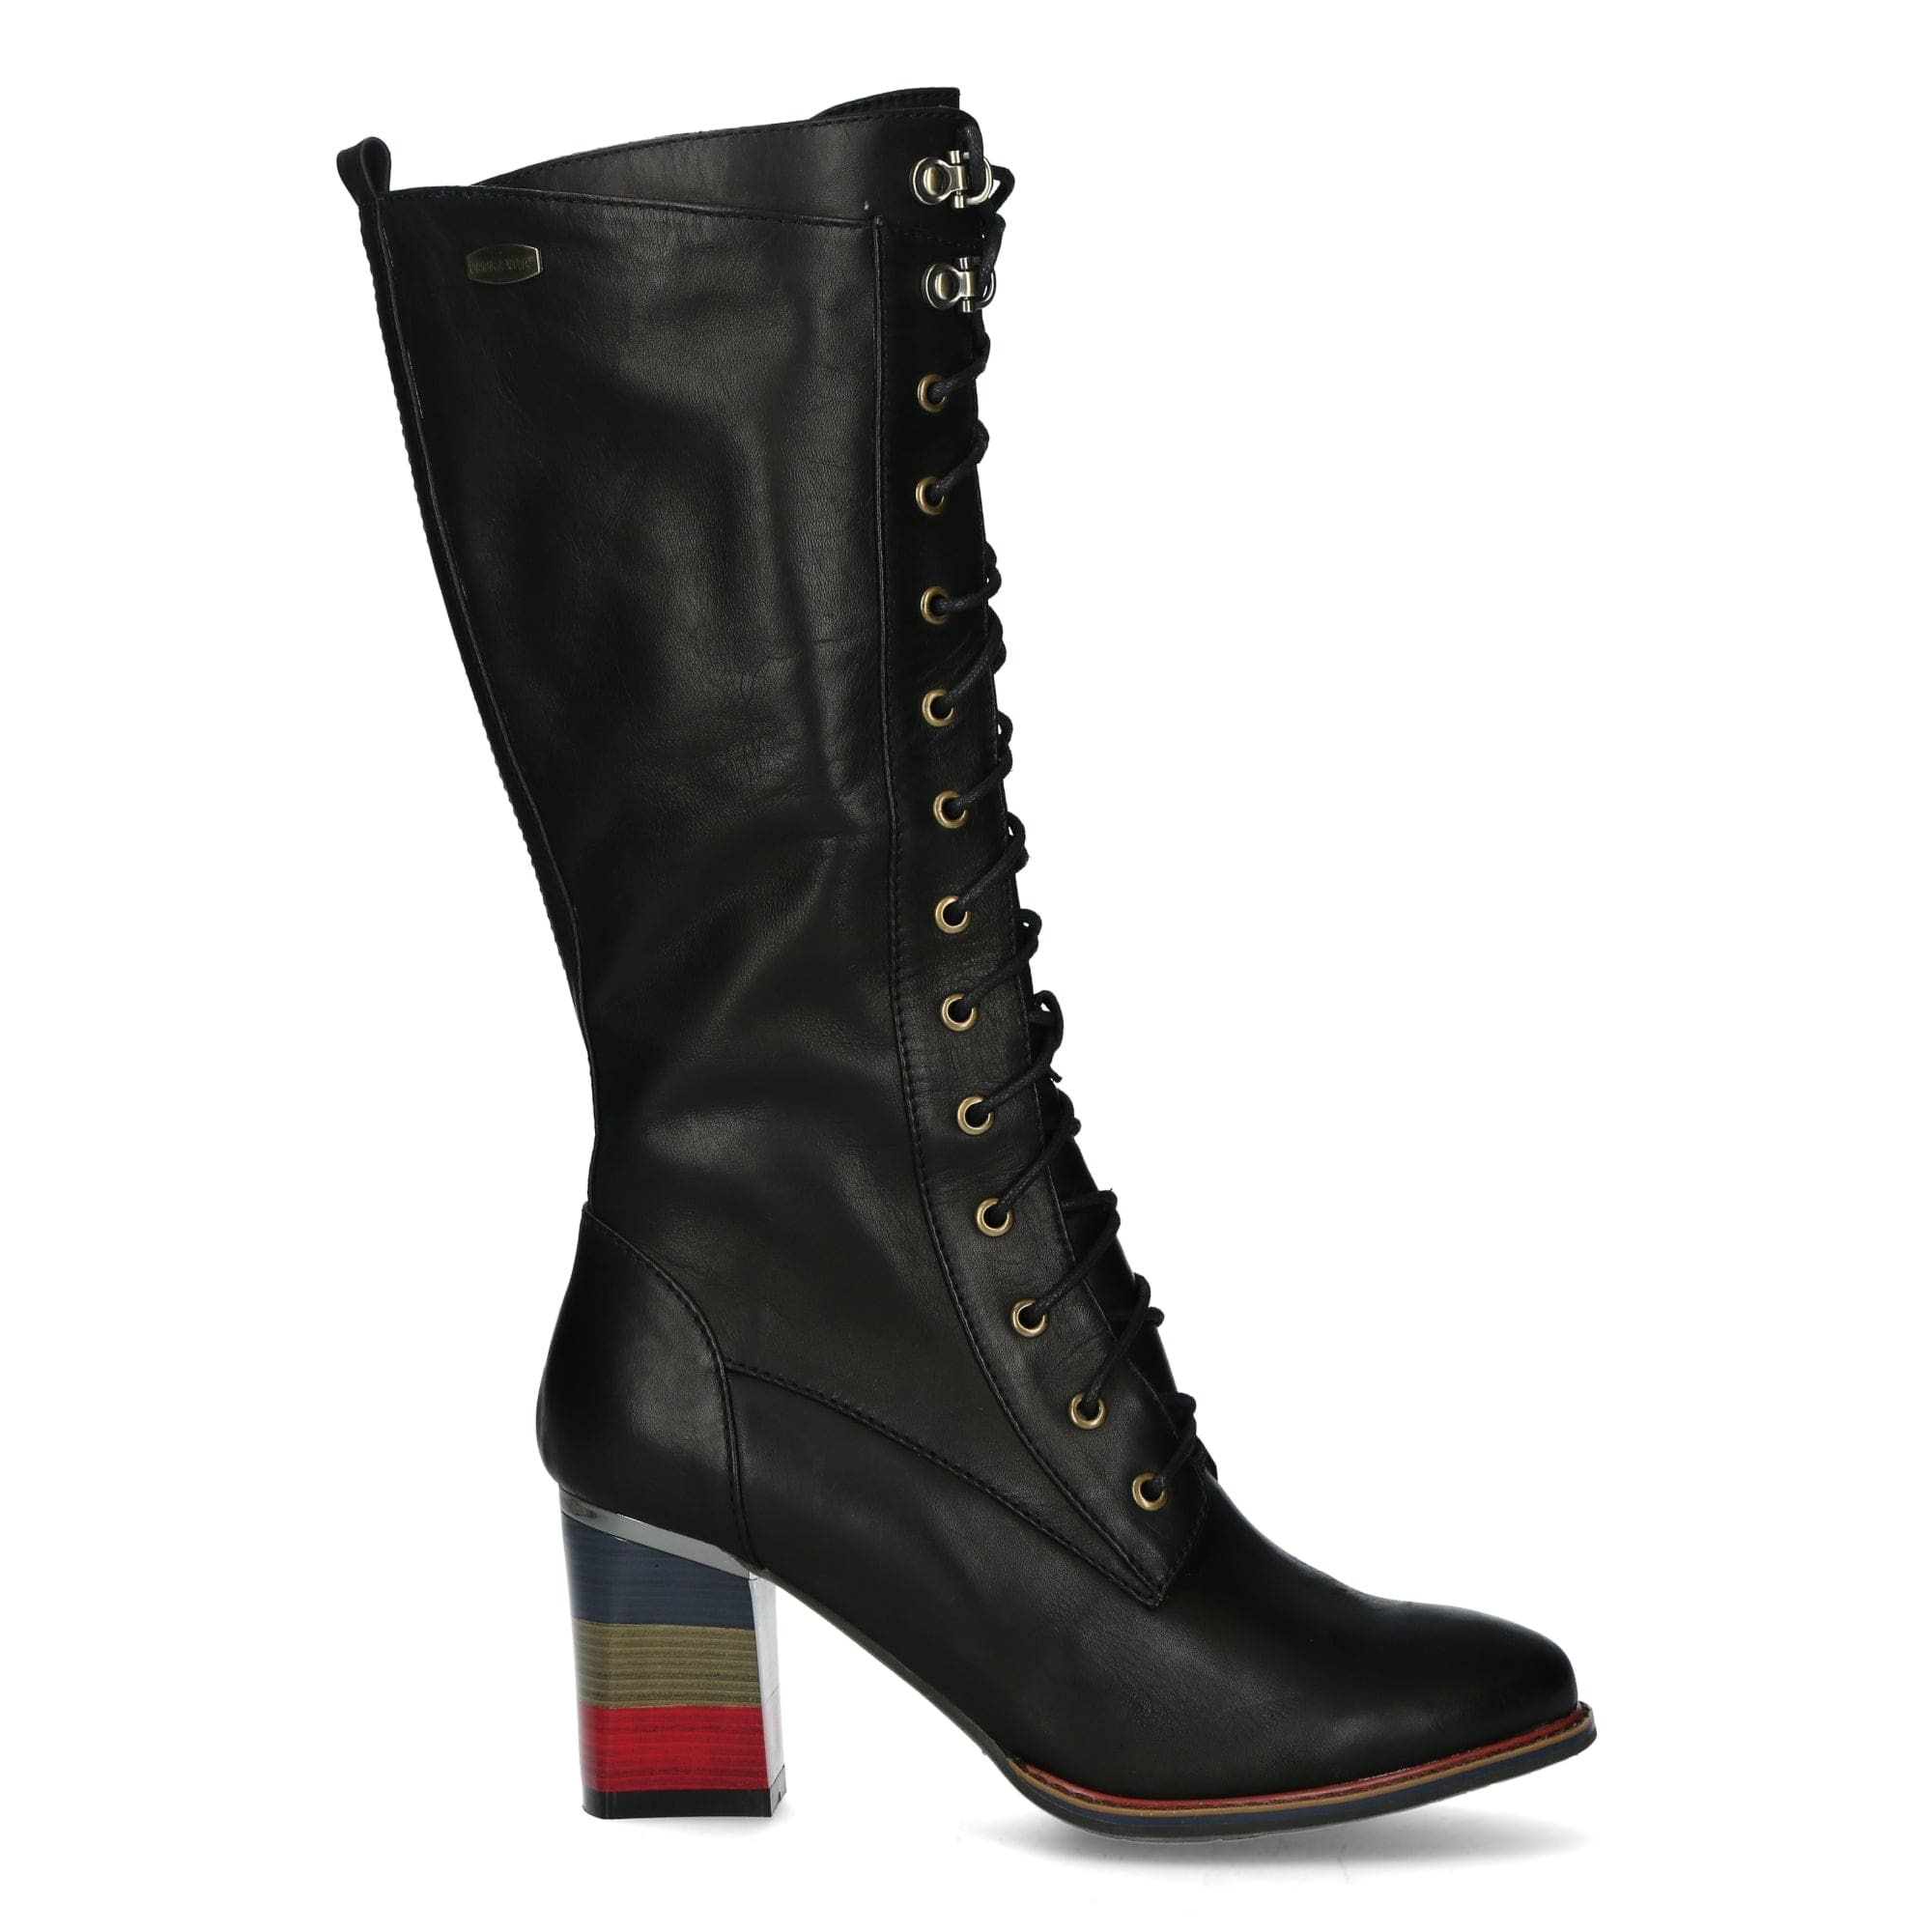 Shoe GECEKO 16A - 36 / Plain black - Boot